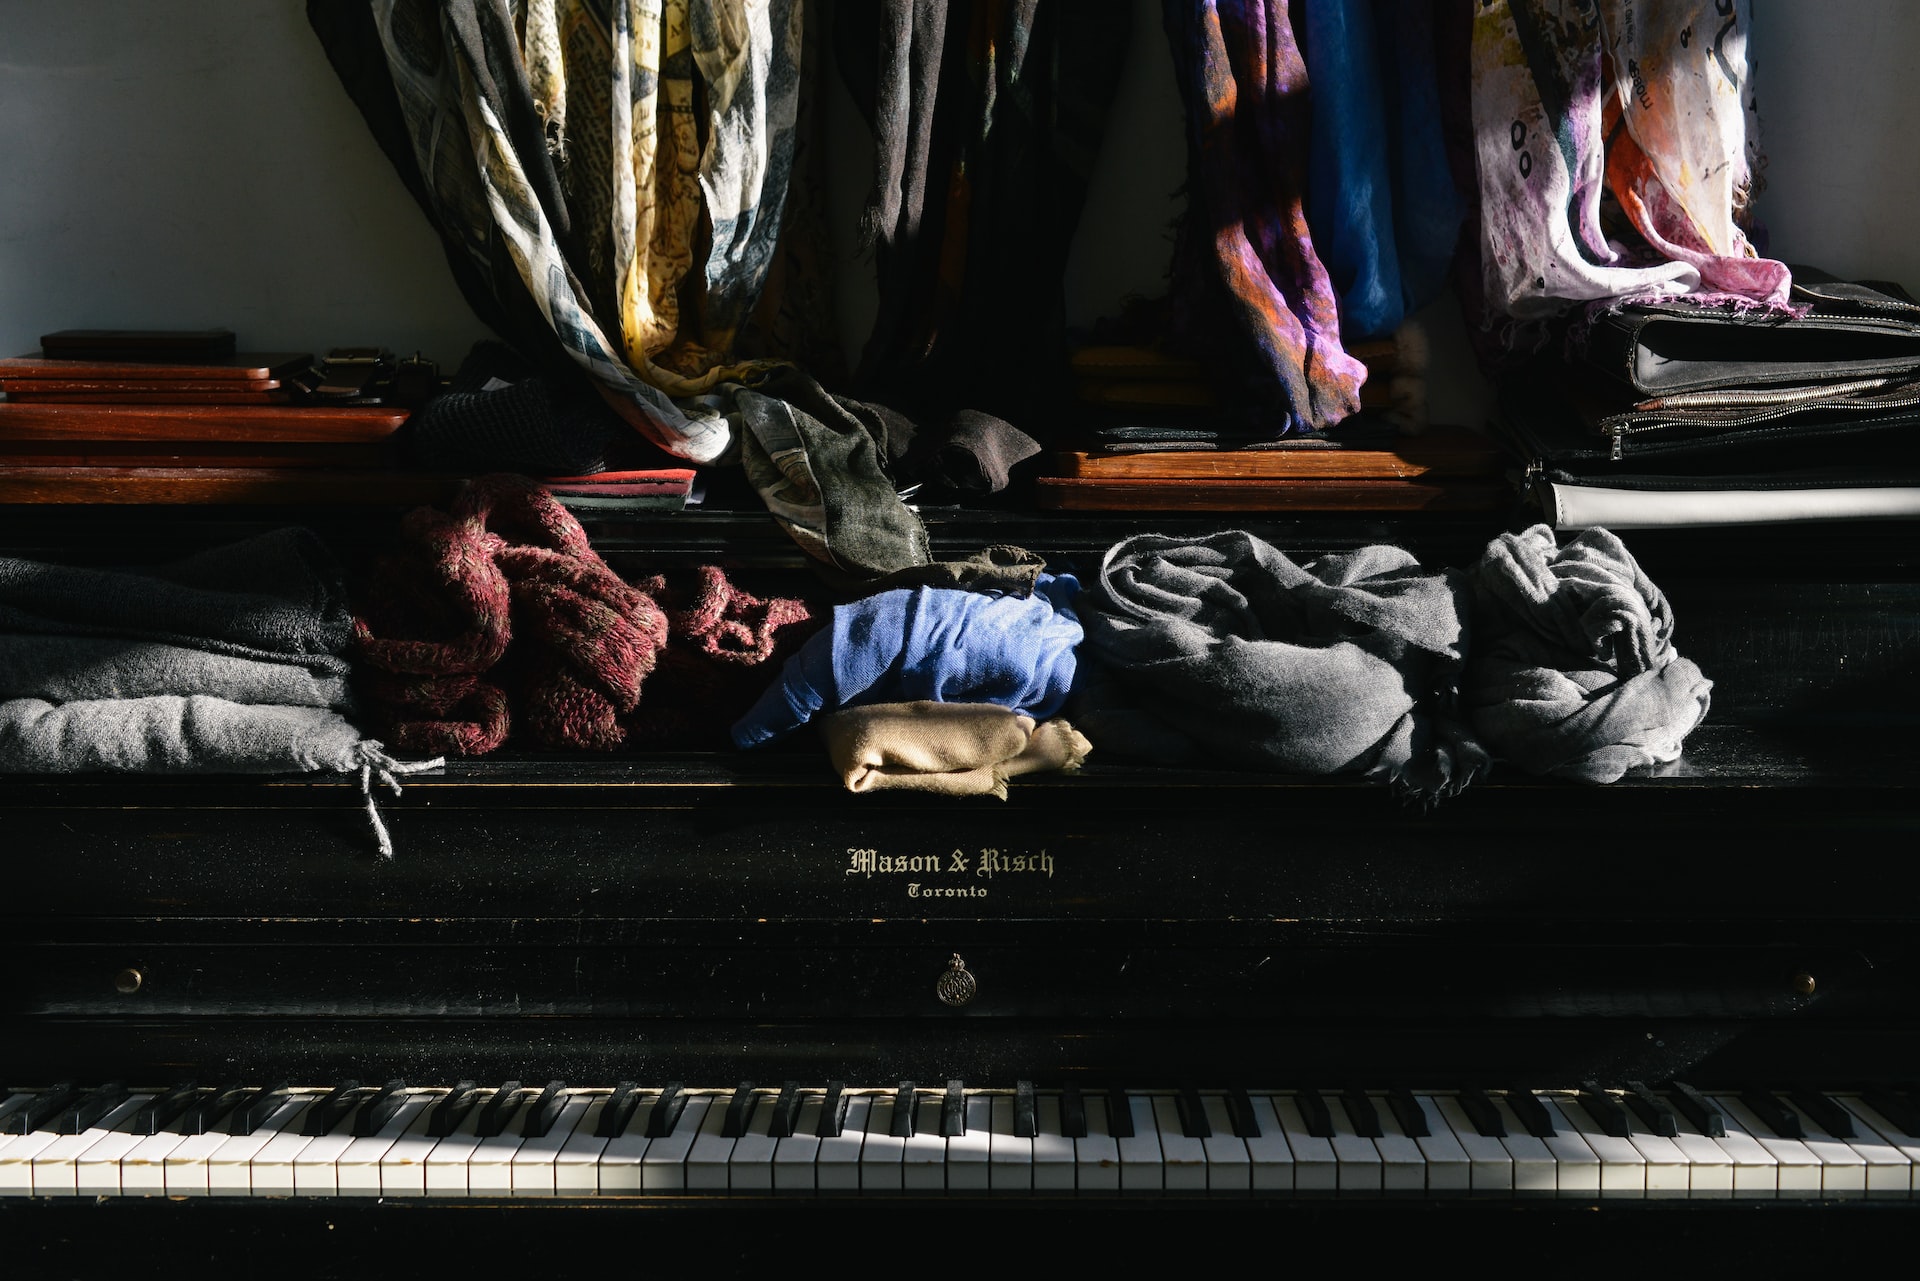 Stapel von Kleidung auf einem Klavier